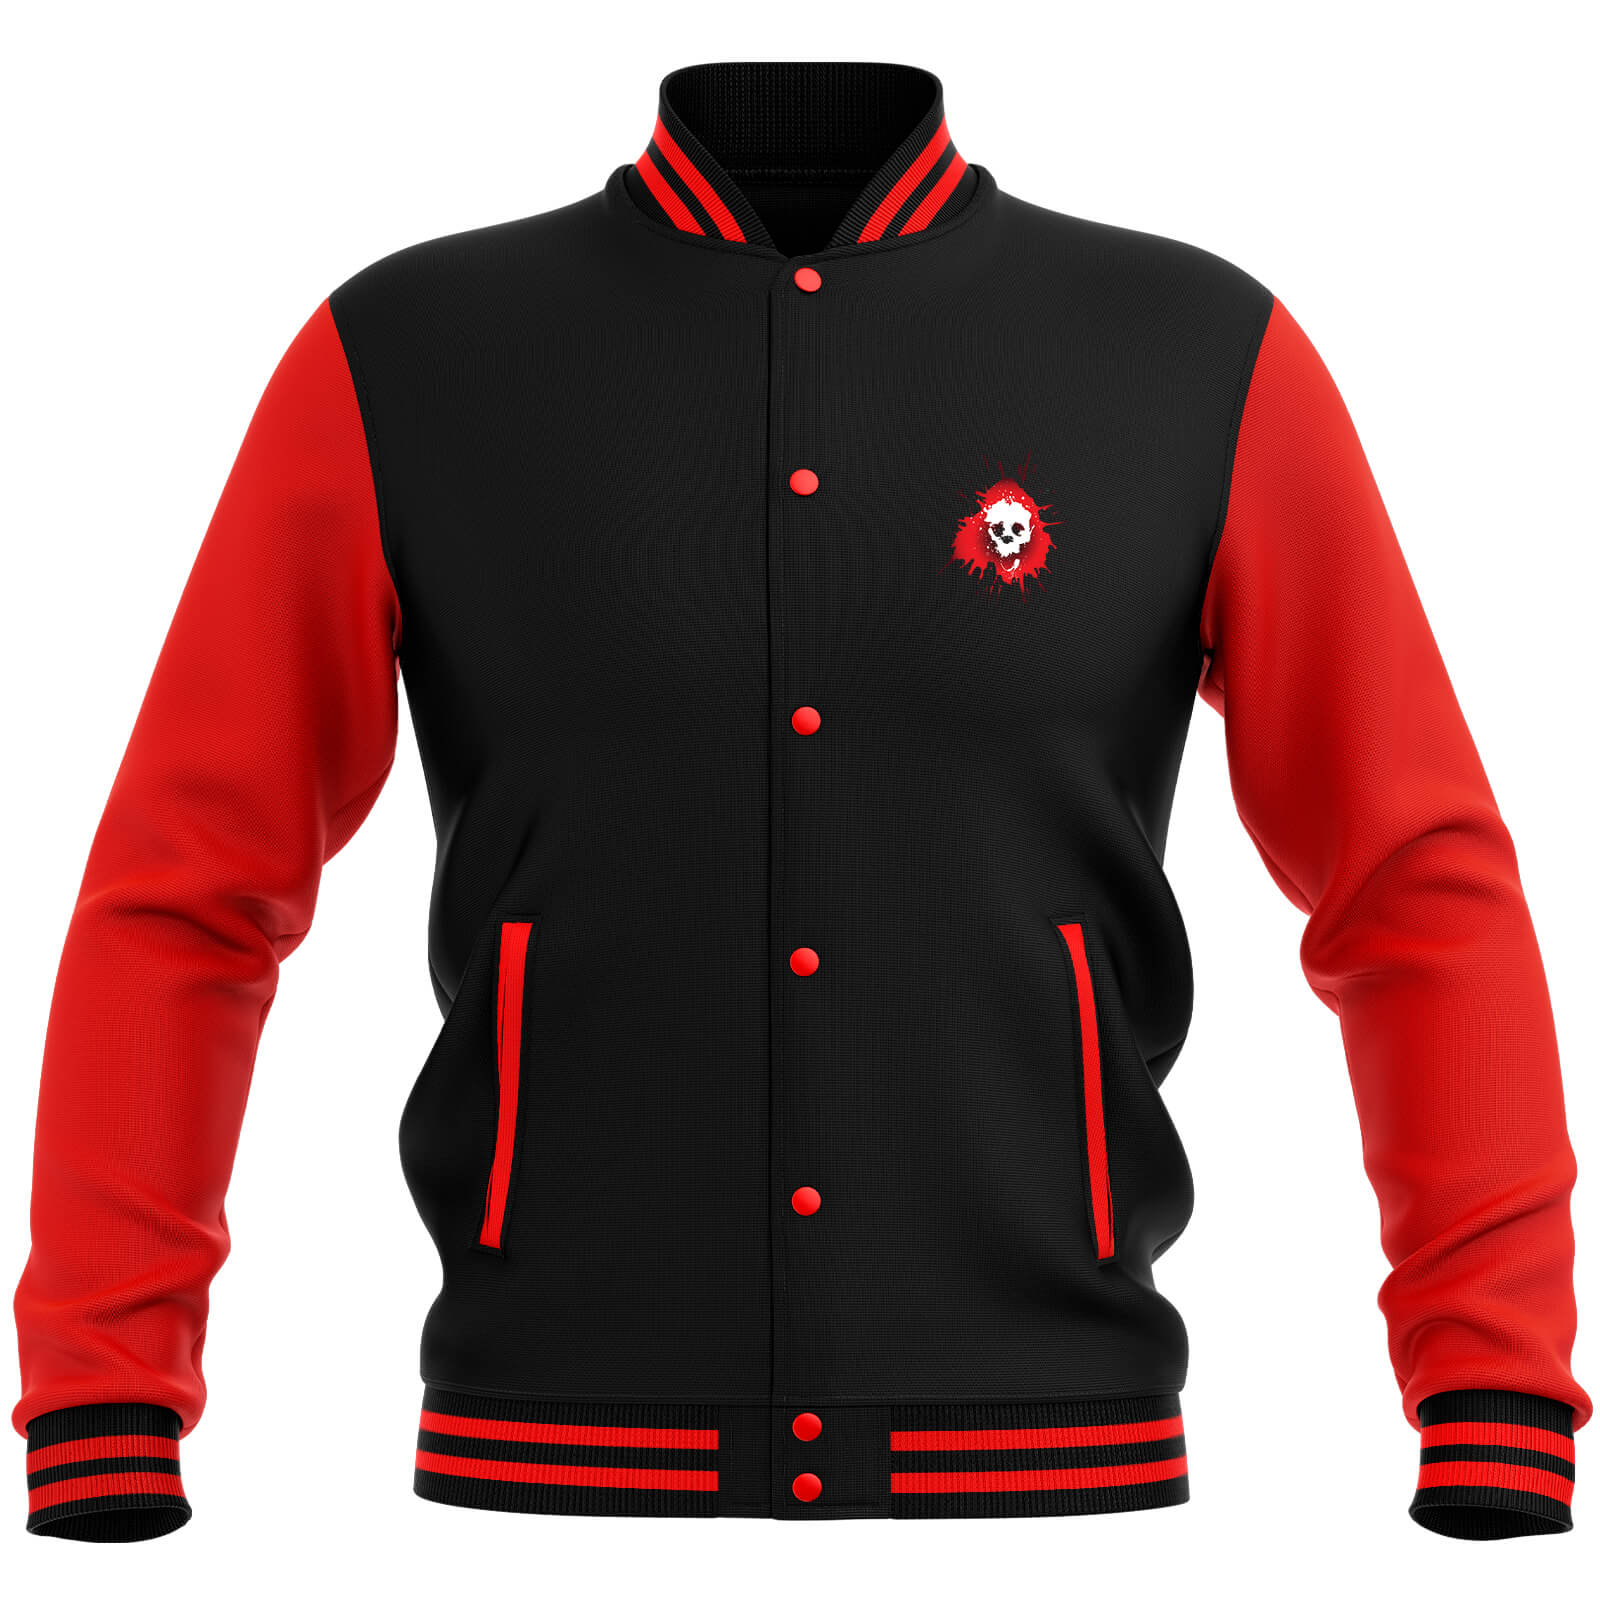 Skullsplat Varsity Jacket - Red/Black - L - Black